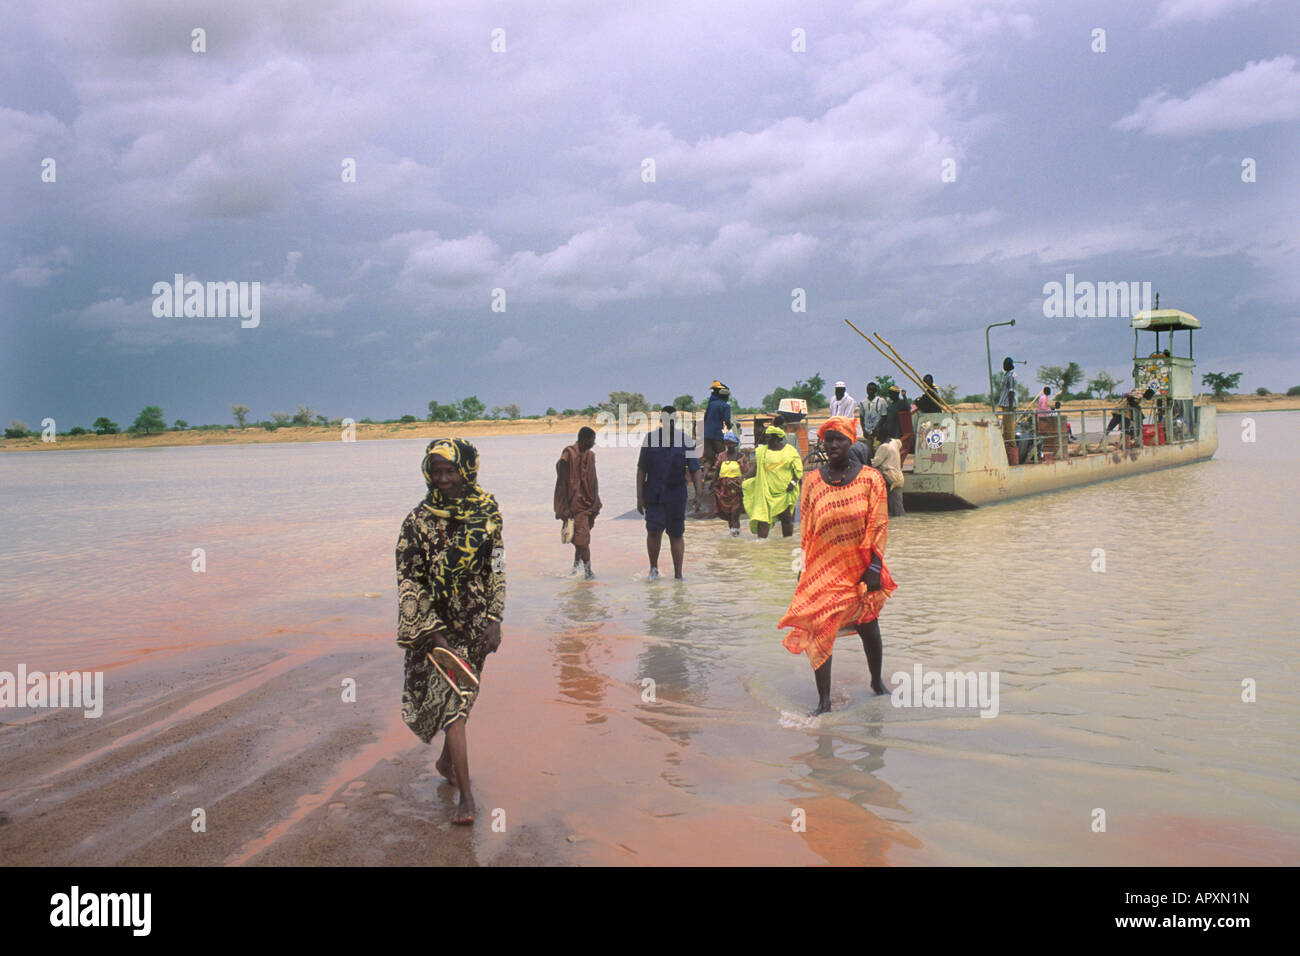 Traghetto sul fiume Niger con alcuni passeggeri a piedi a terra attraverso l'acqua poco profonda. Foto Stock